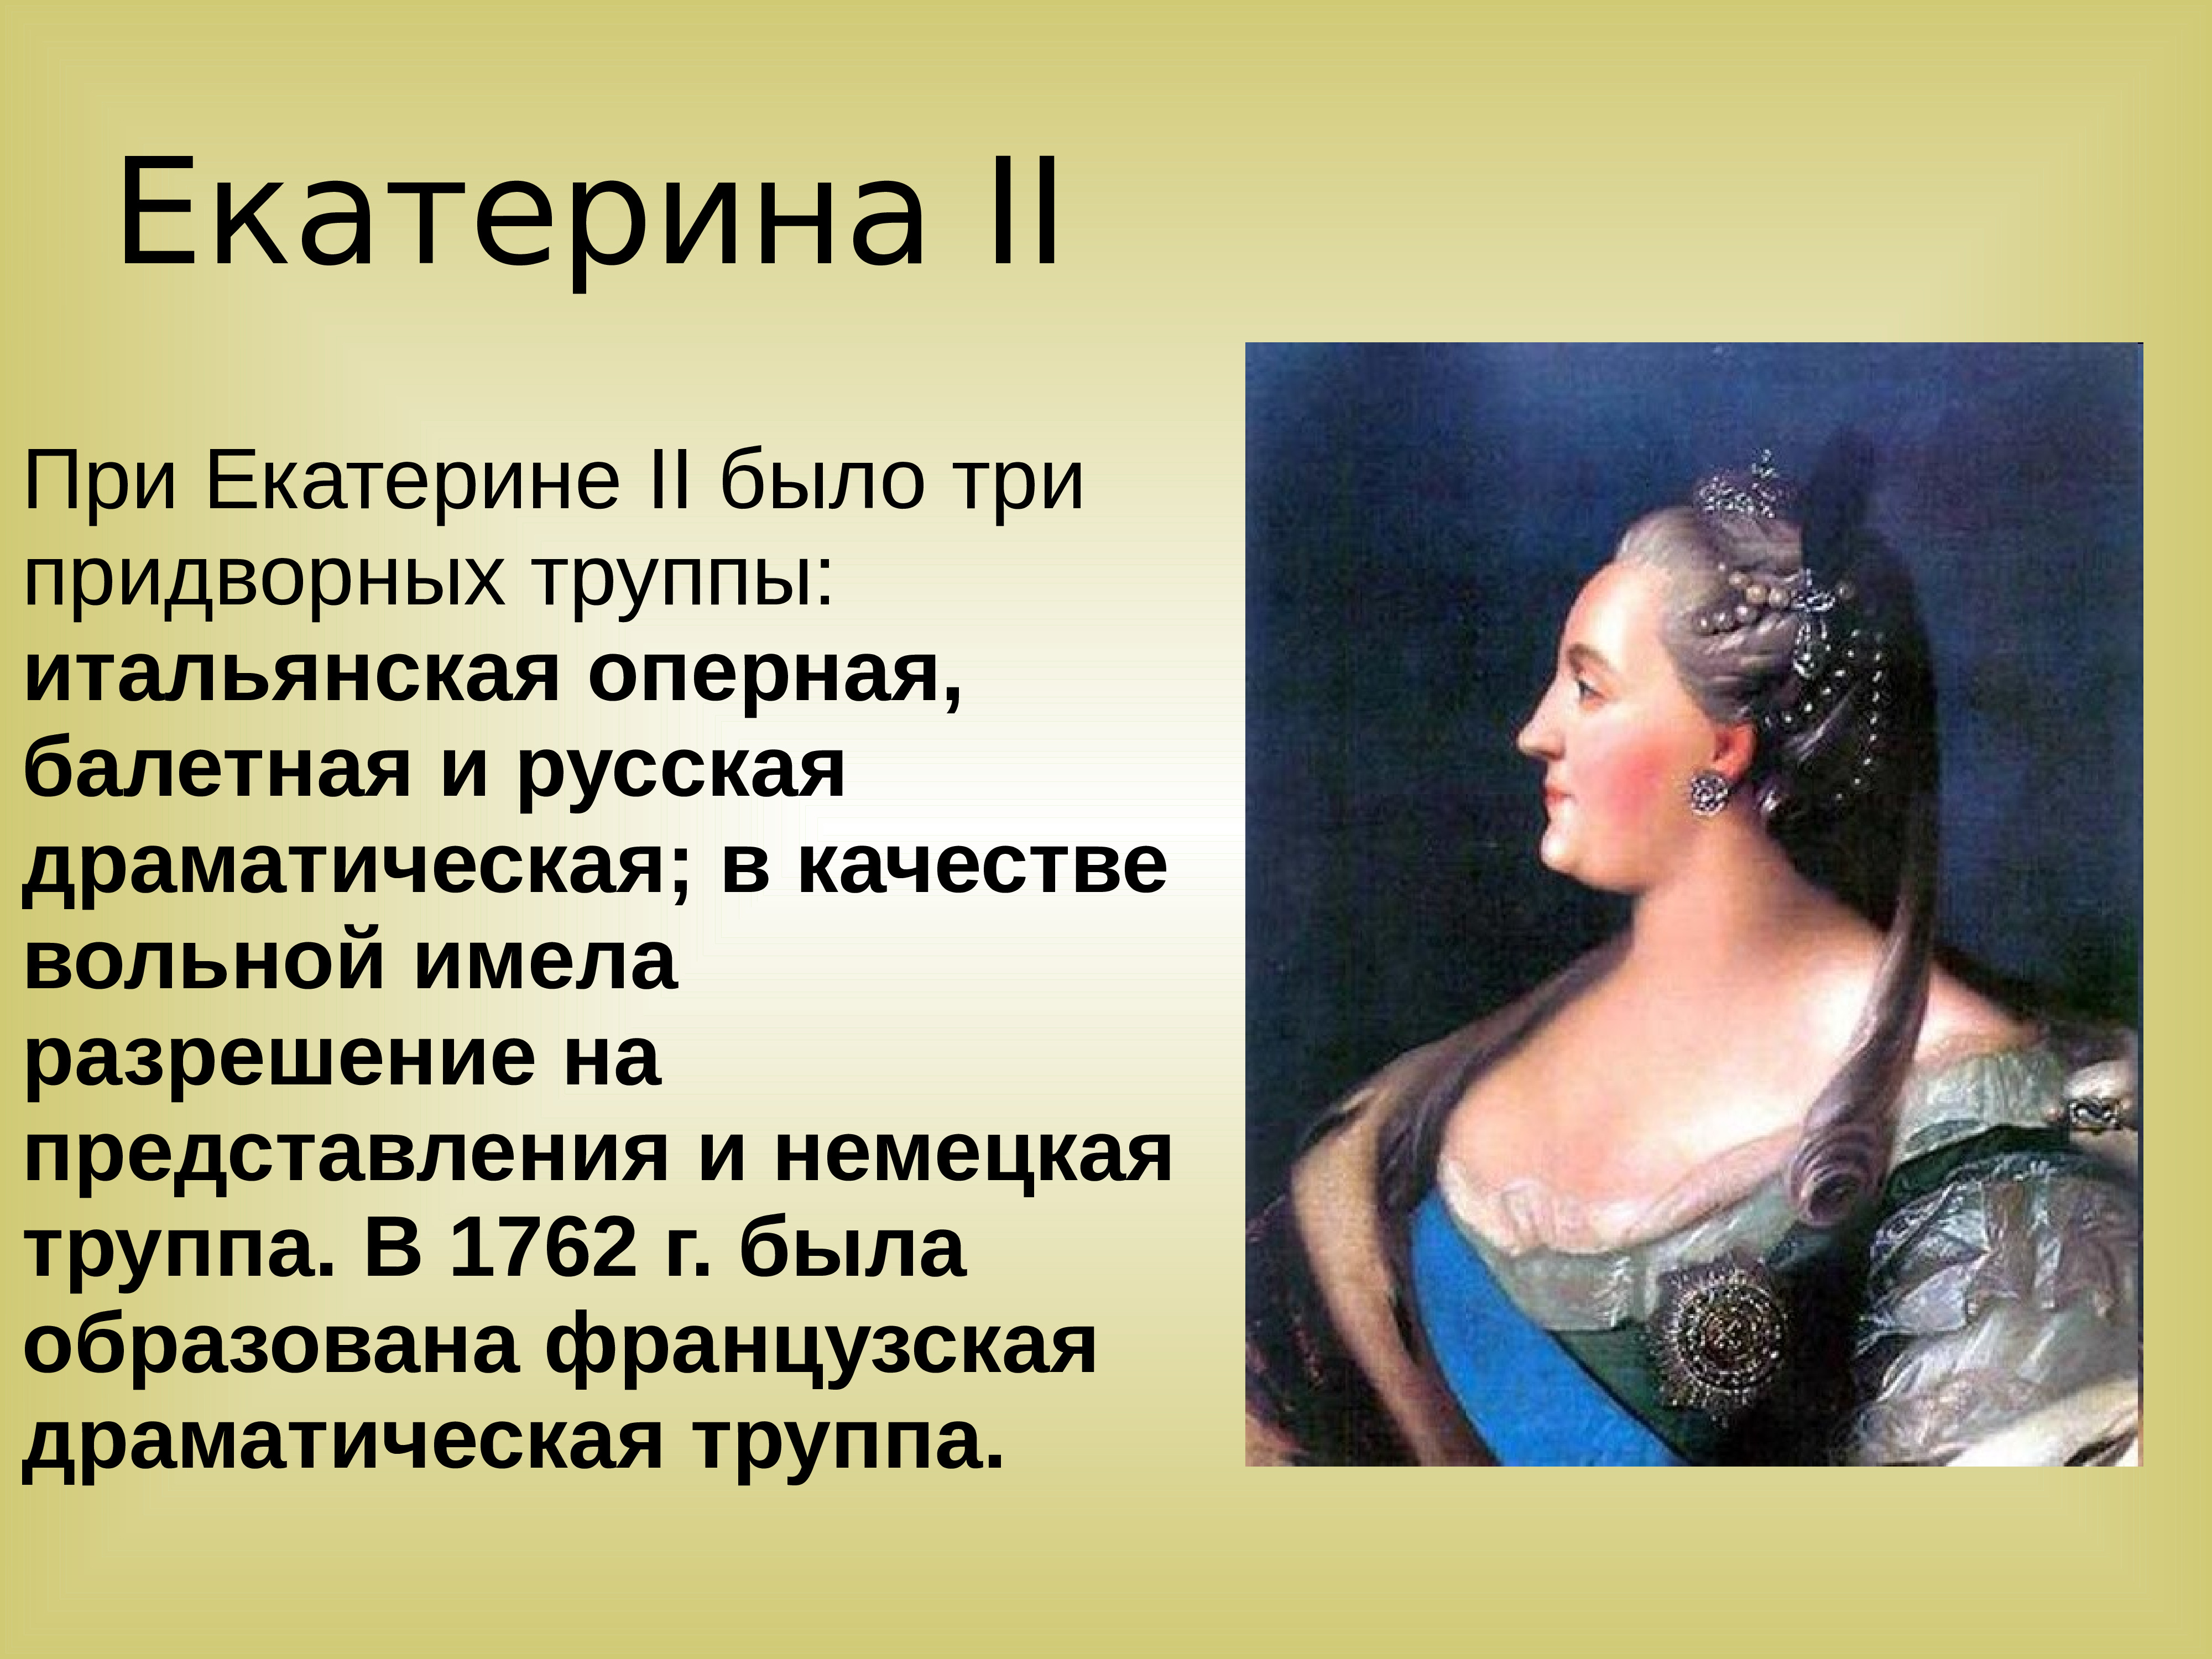 Театральное искусство 18 века презентация